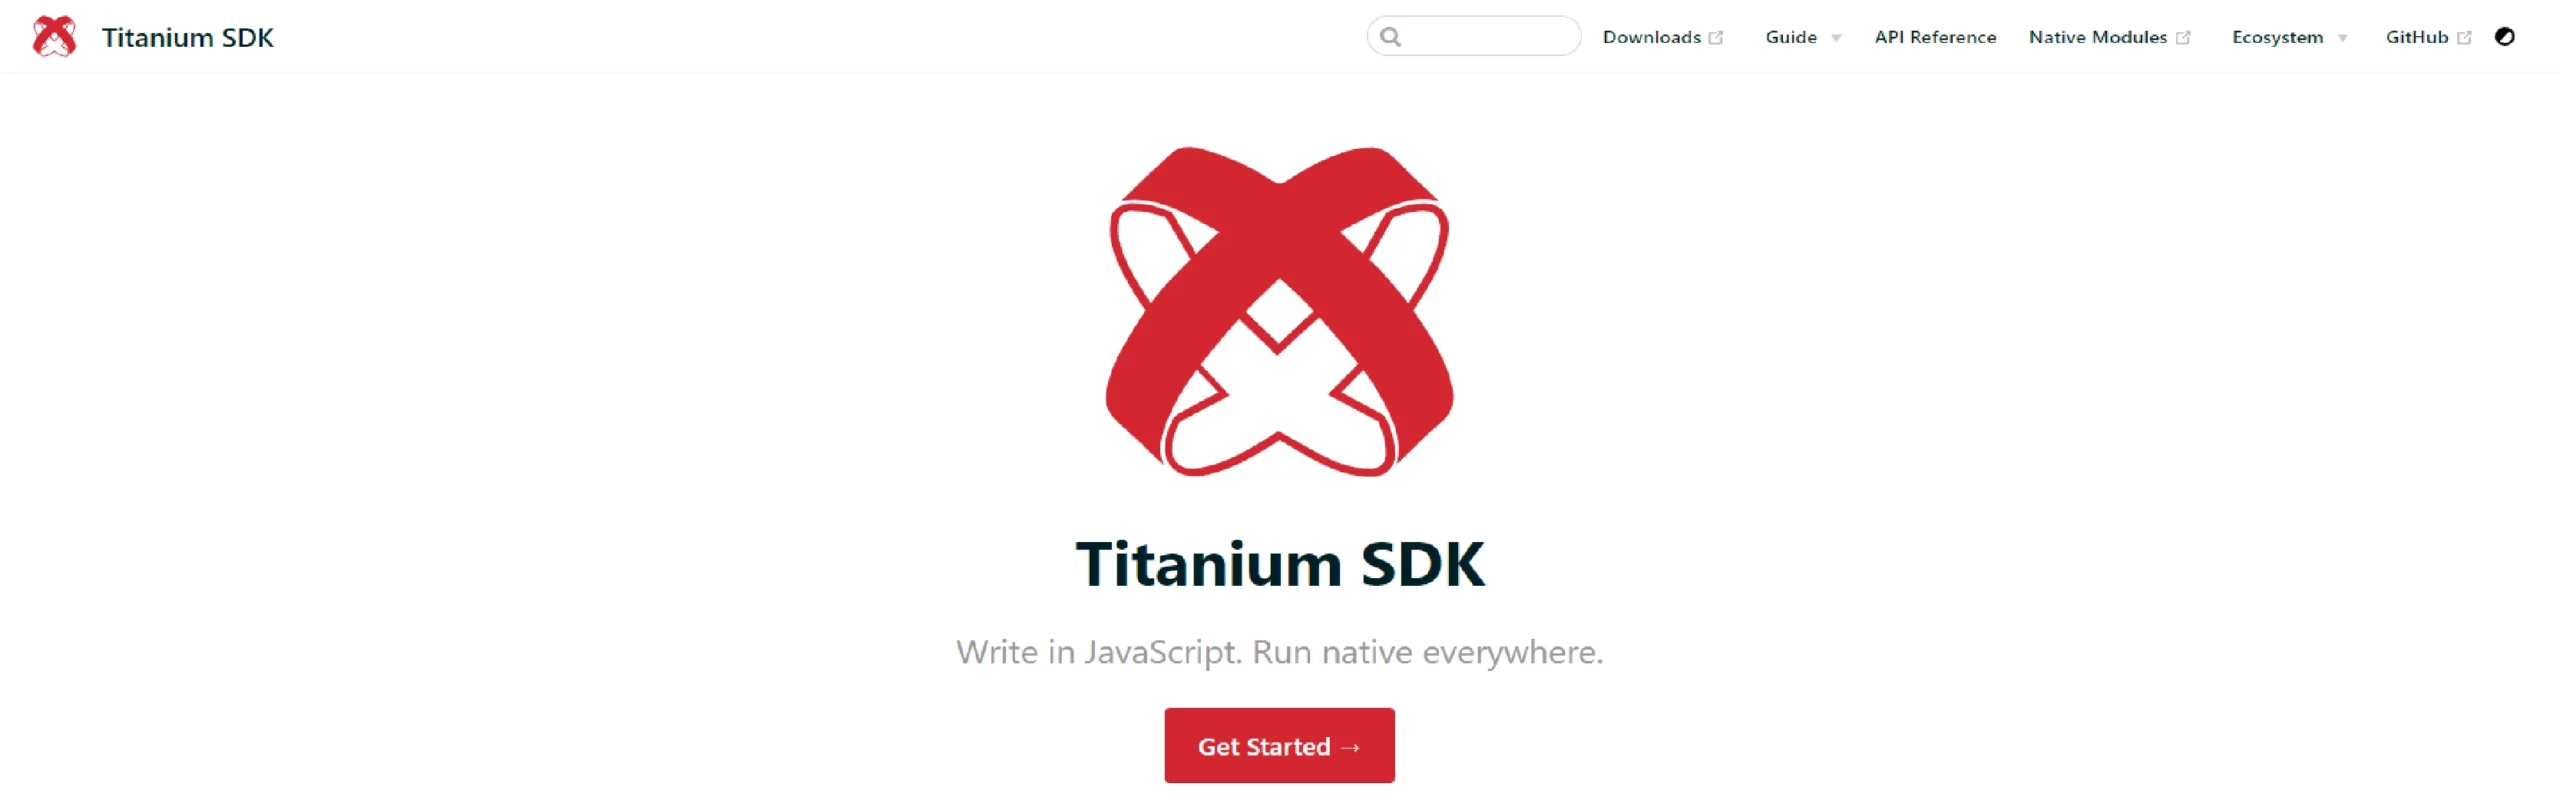 Titanium SDK